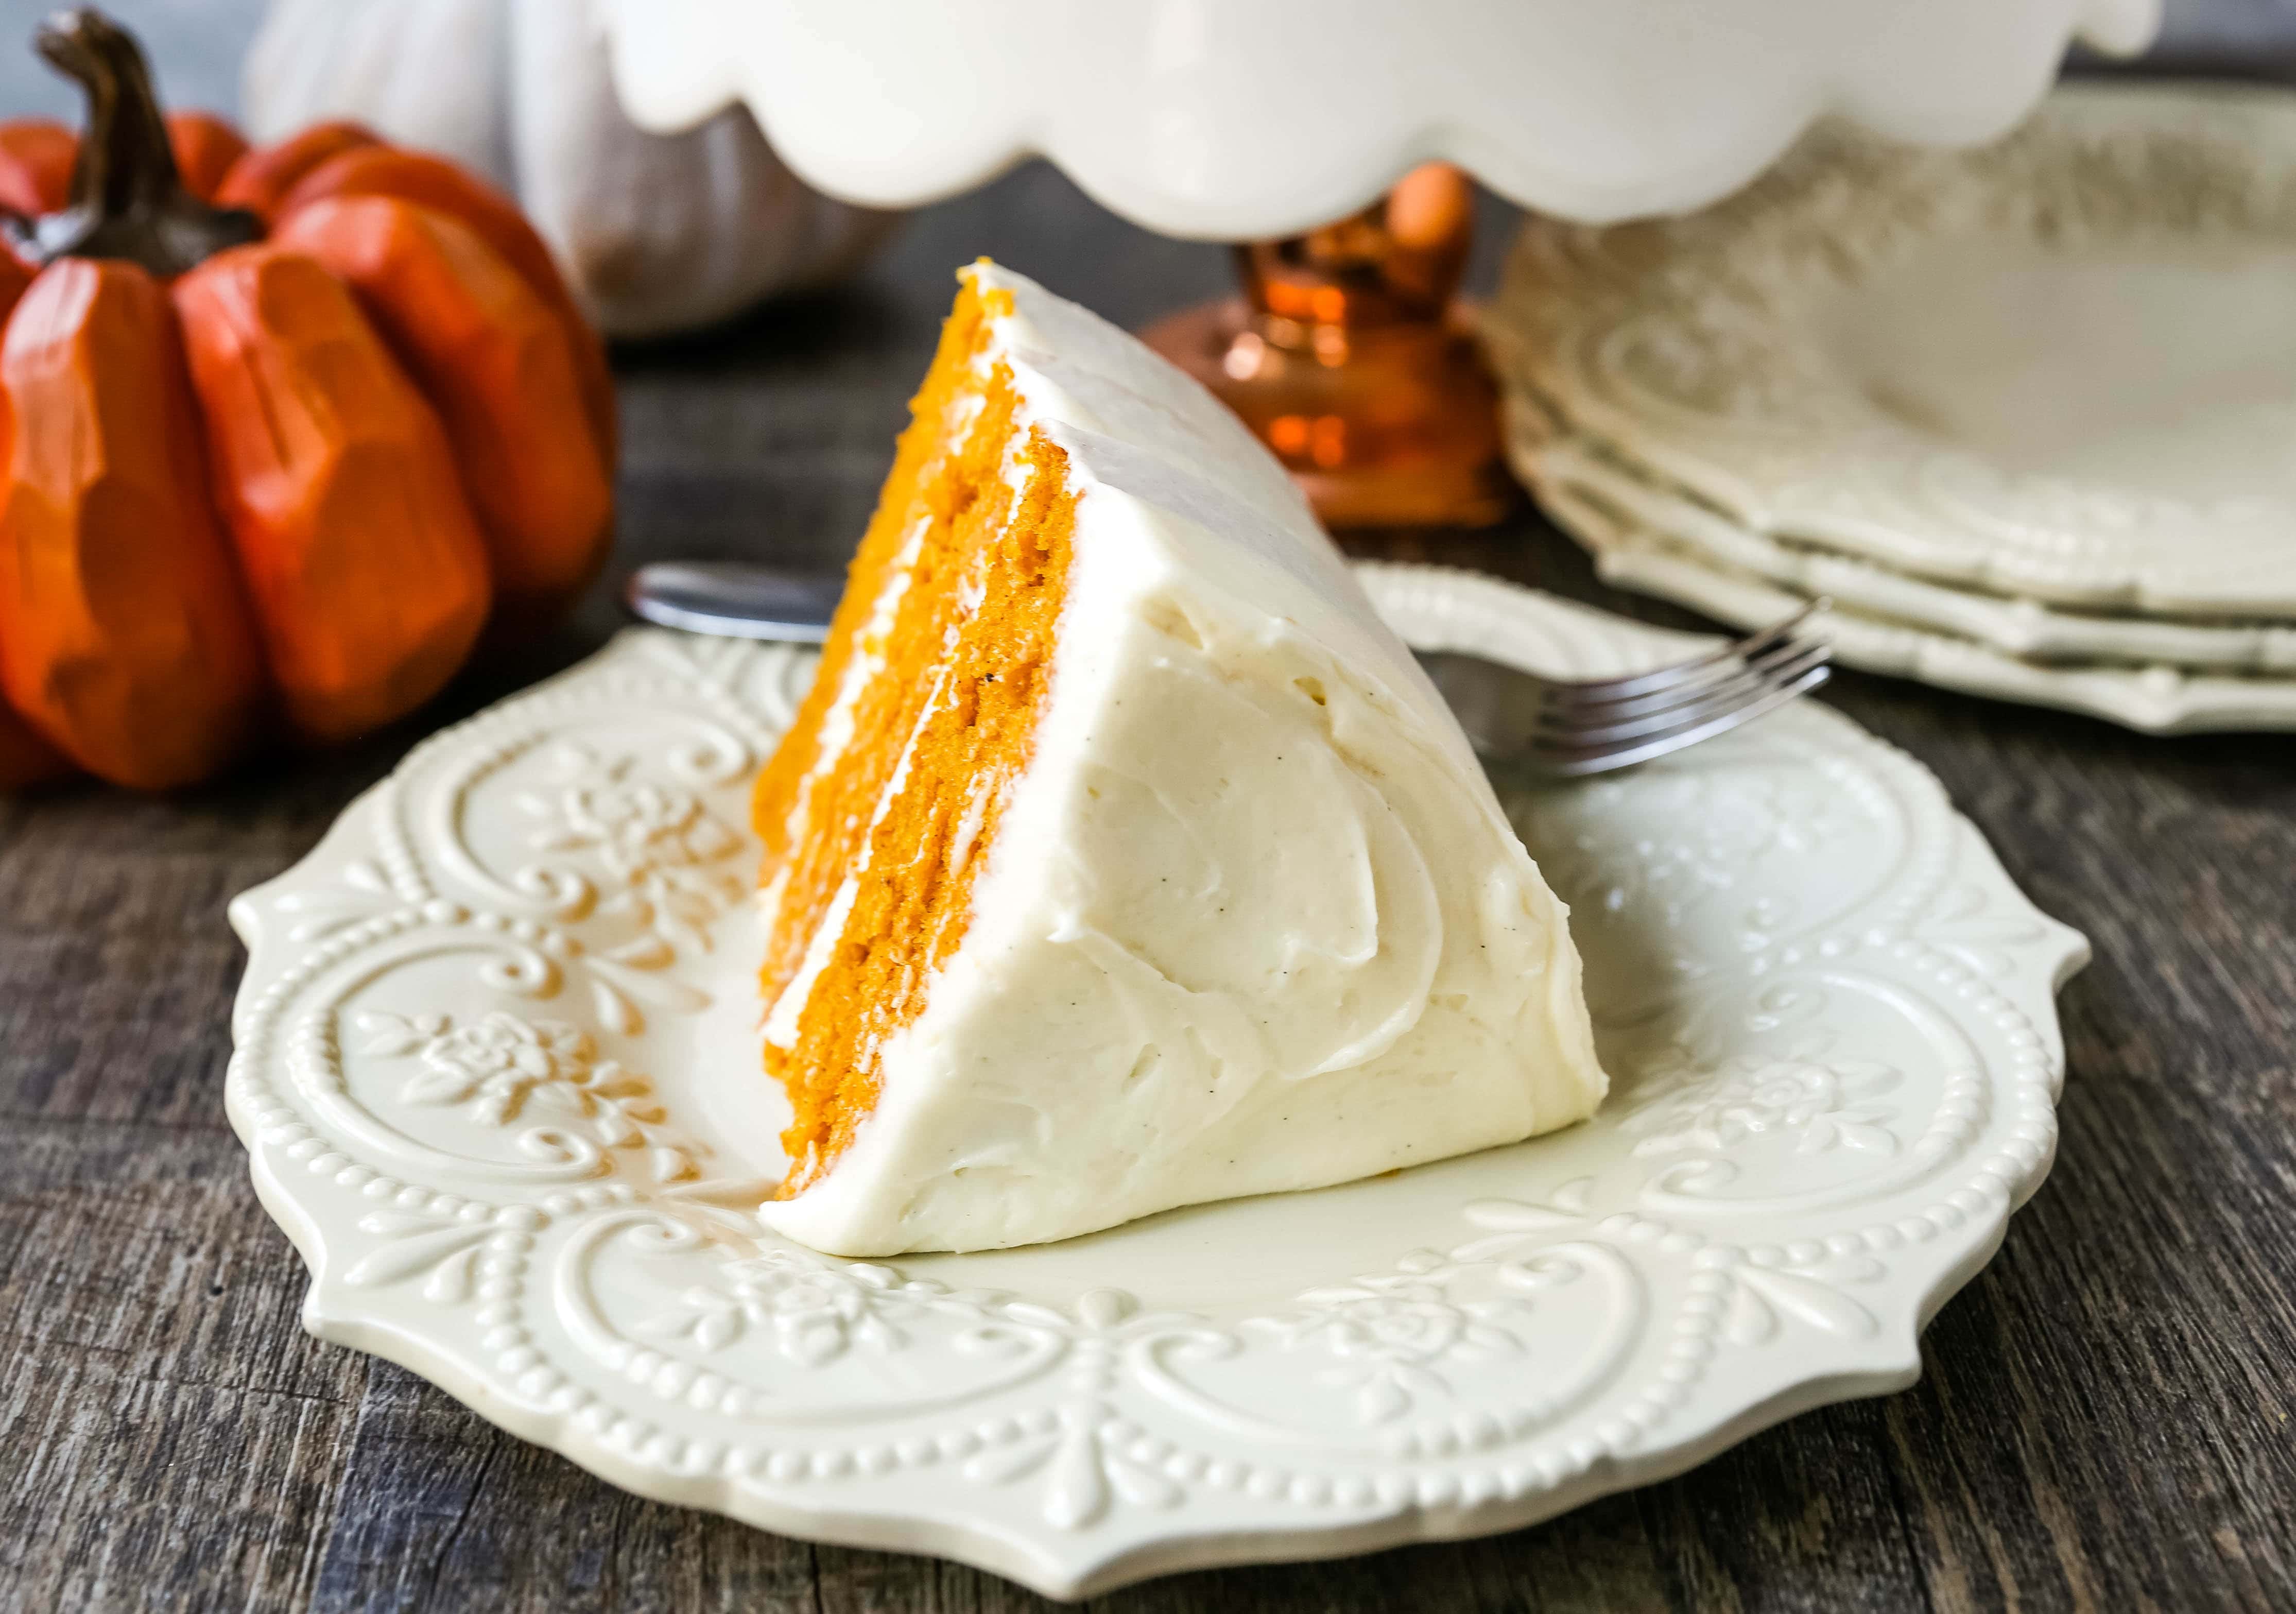 Pumpkin Cake with Cream Cheese Frosting Moist Pumpkin Spiced Cake with a Sweet Cream Cheese Frosting. The best Fall pumpkin layered cake recipe!  www.modernhoney.com #pumpkin #pumpkinrecipes #fall #ffallrecipes #pumpkincake